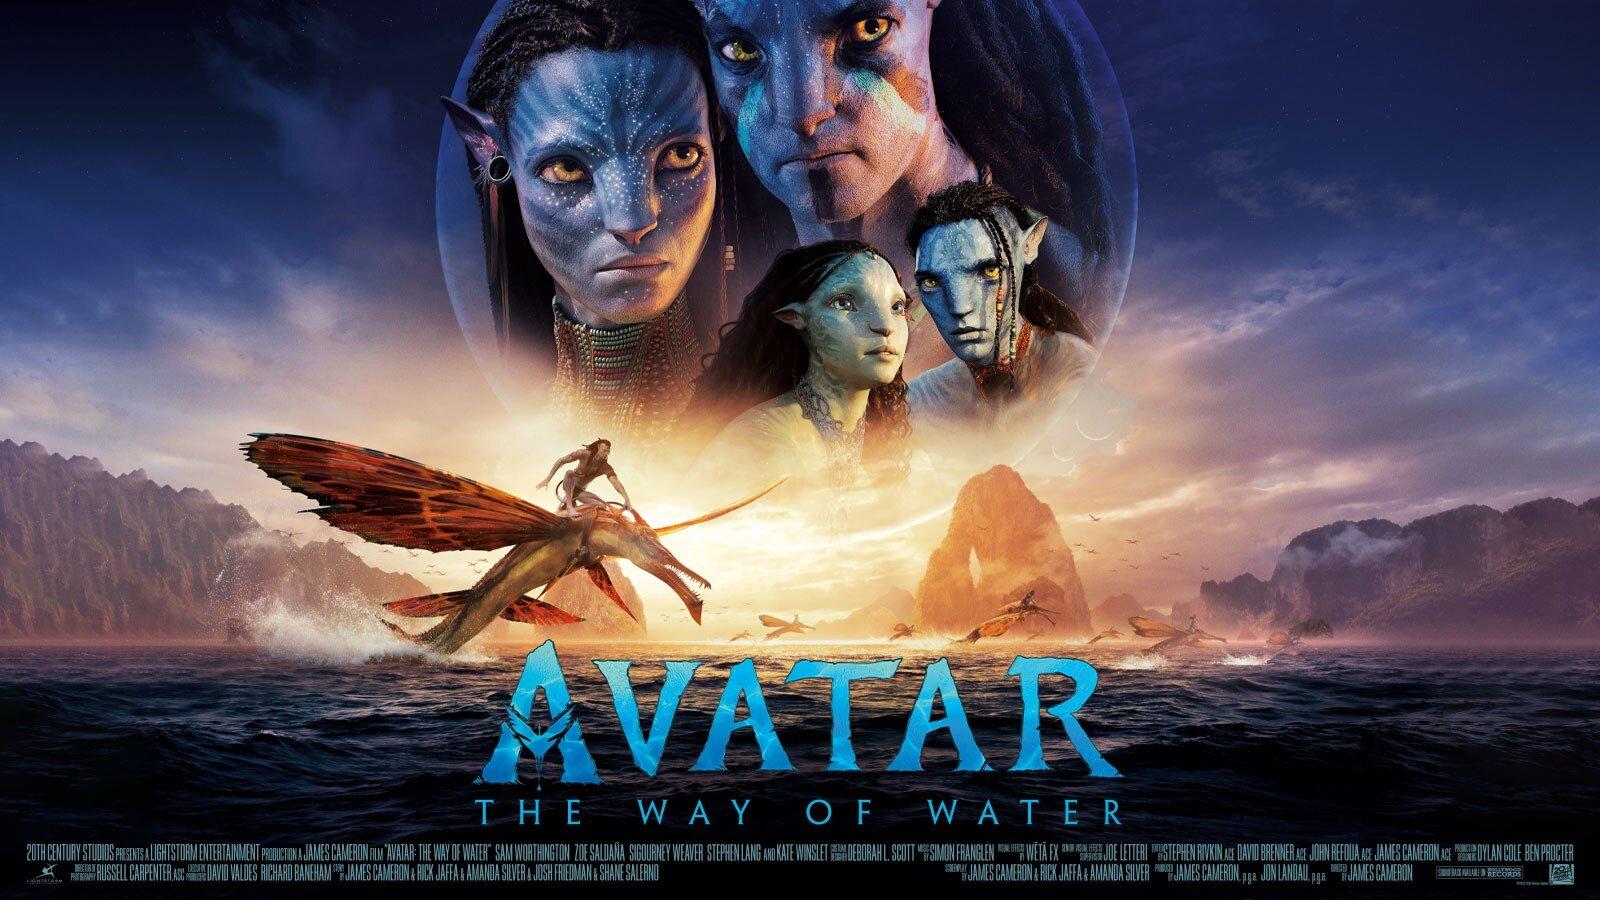 Bộ phim tiếp nối của đạo diễn tài ba James Cameron hứa hẹn sẽ lấy lại được danh tiếng của phần đầu tiên với những cảnh quay đẹp mắt, hành trình phiêu lưu mới lạ và những thông điệp về tình người và bảo vệ môi trường. Hãy đón xem bộ phim Avatar 2 tại rạp chiếu phim để trải nghiệm những giây phút thăng hoa cùng chúng tôi.